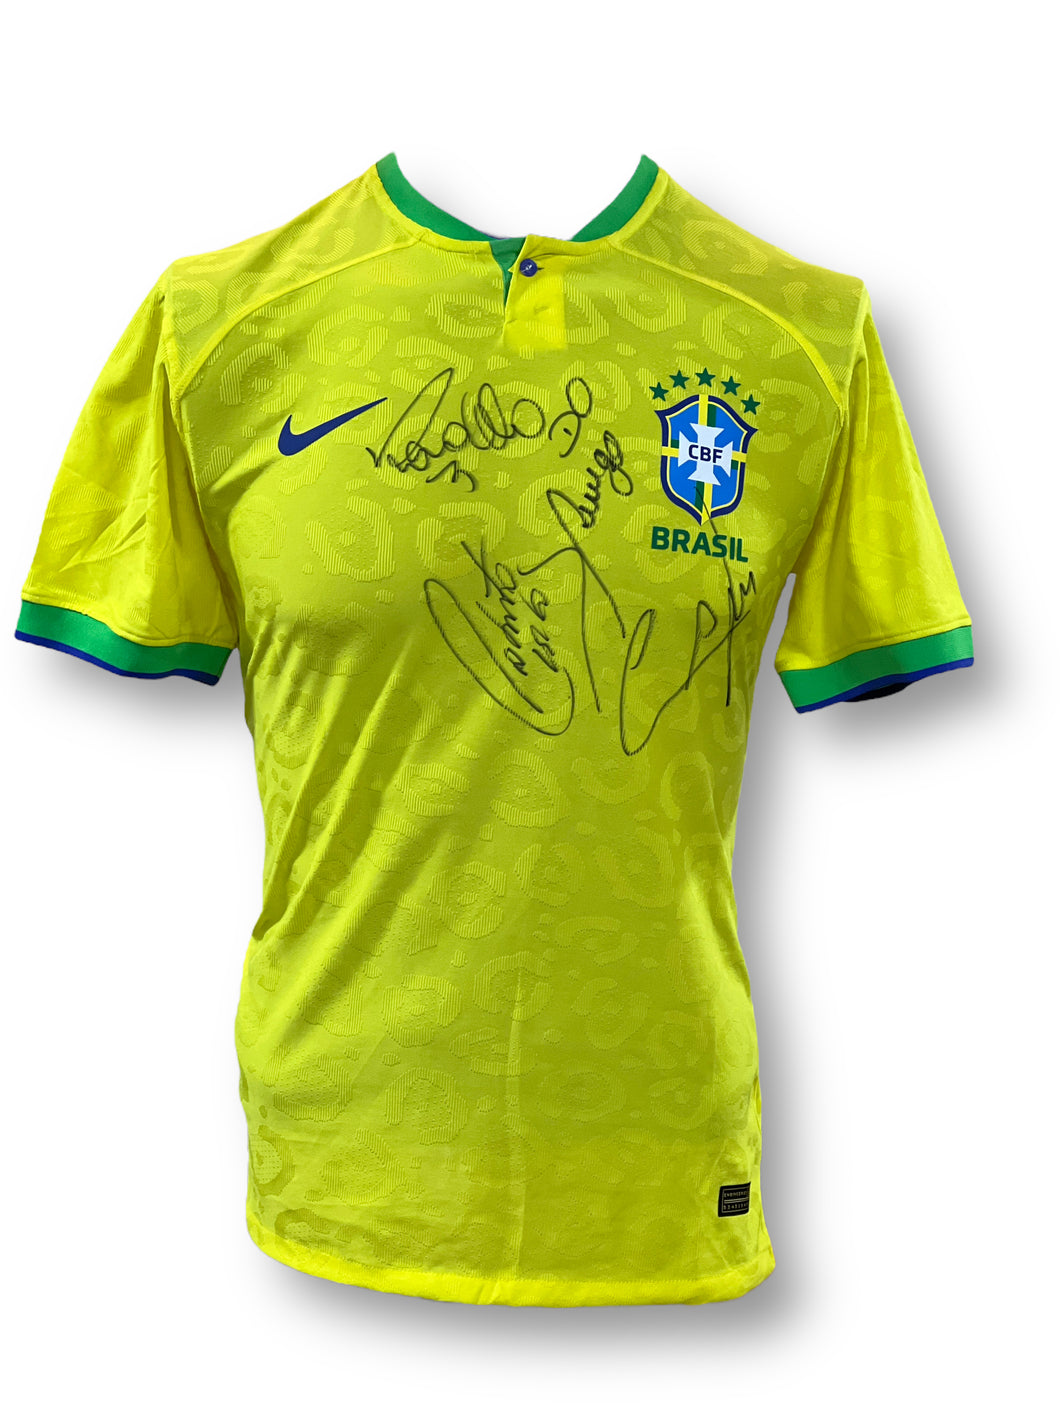 Jersey / Selección de Brasil / Ronaldo, Roberto Carlos, Cafú